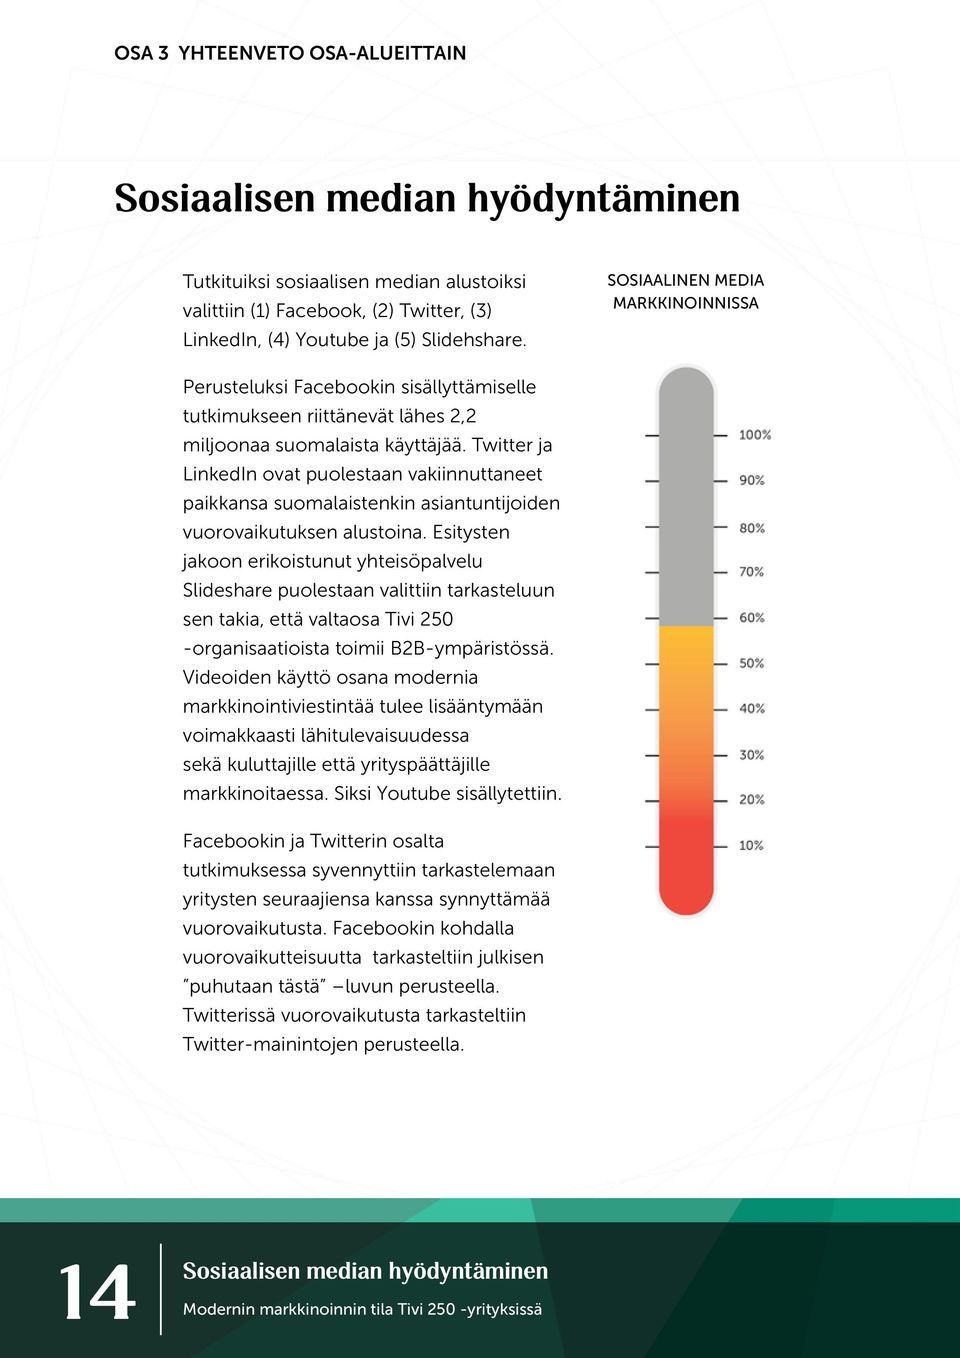 Twitter ja LinkedIn ovat puolestaan vakiinnuttaneet paikkansa suomalaistenkin asiantuntijoiden vuorovaikutuksen alustoina.